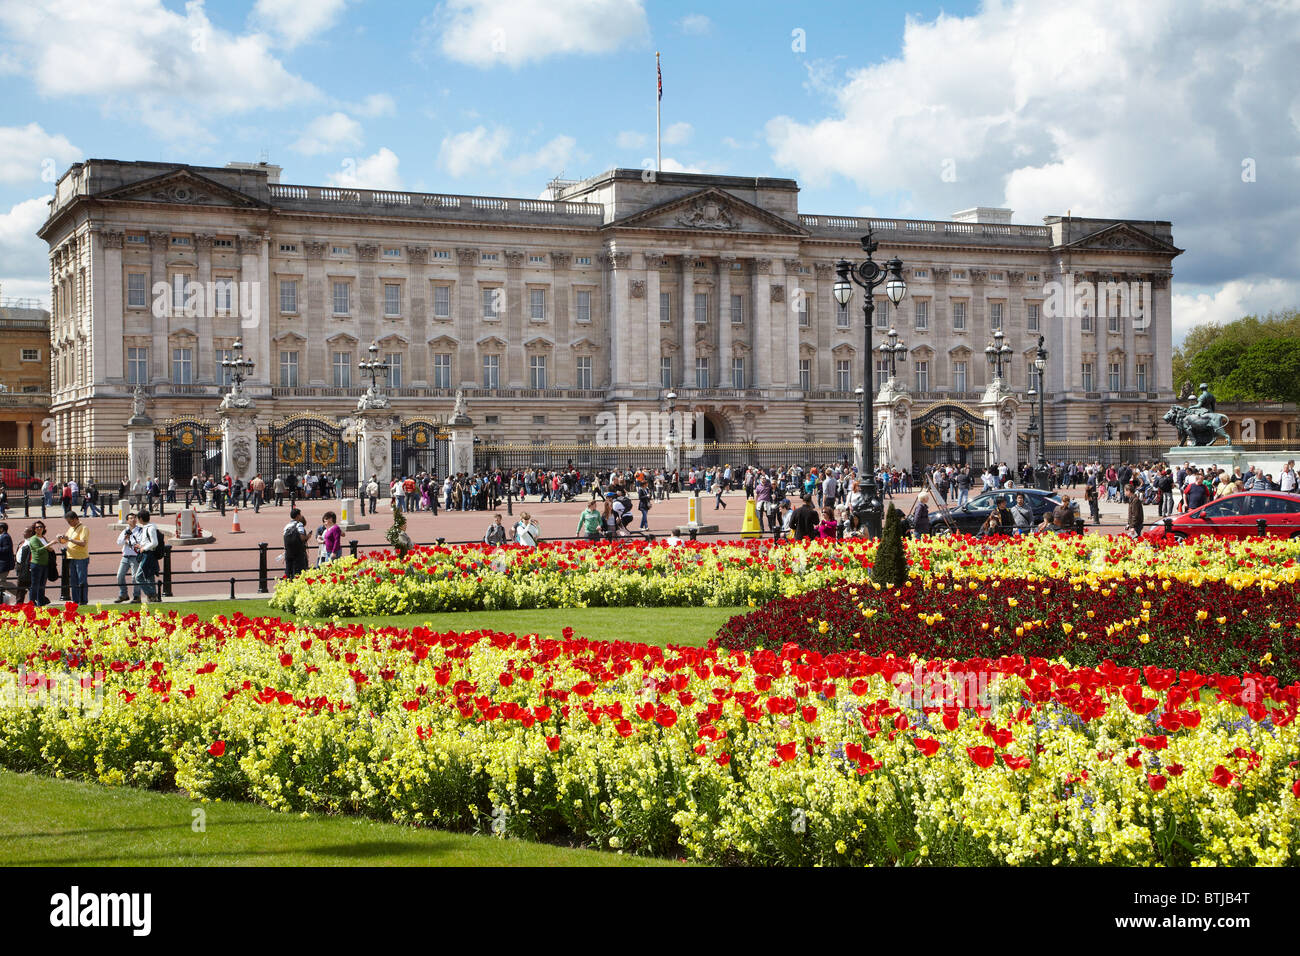 Le palais de Buckingham, et Memorial Gardens, Londres, Angleterre, Royaume-Uni Banque D'Images